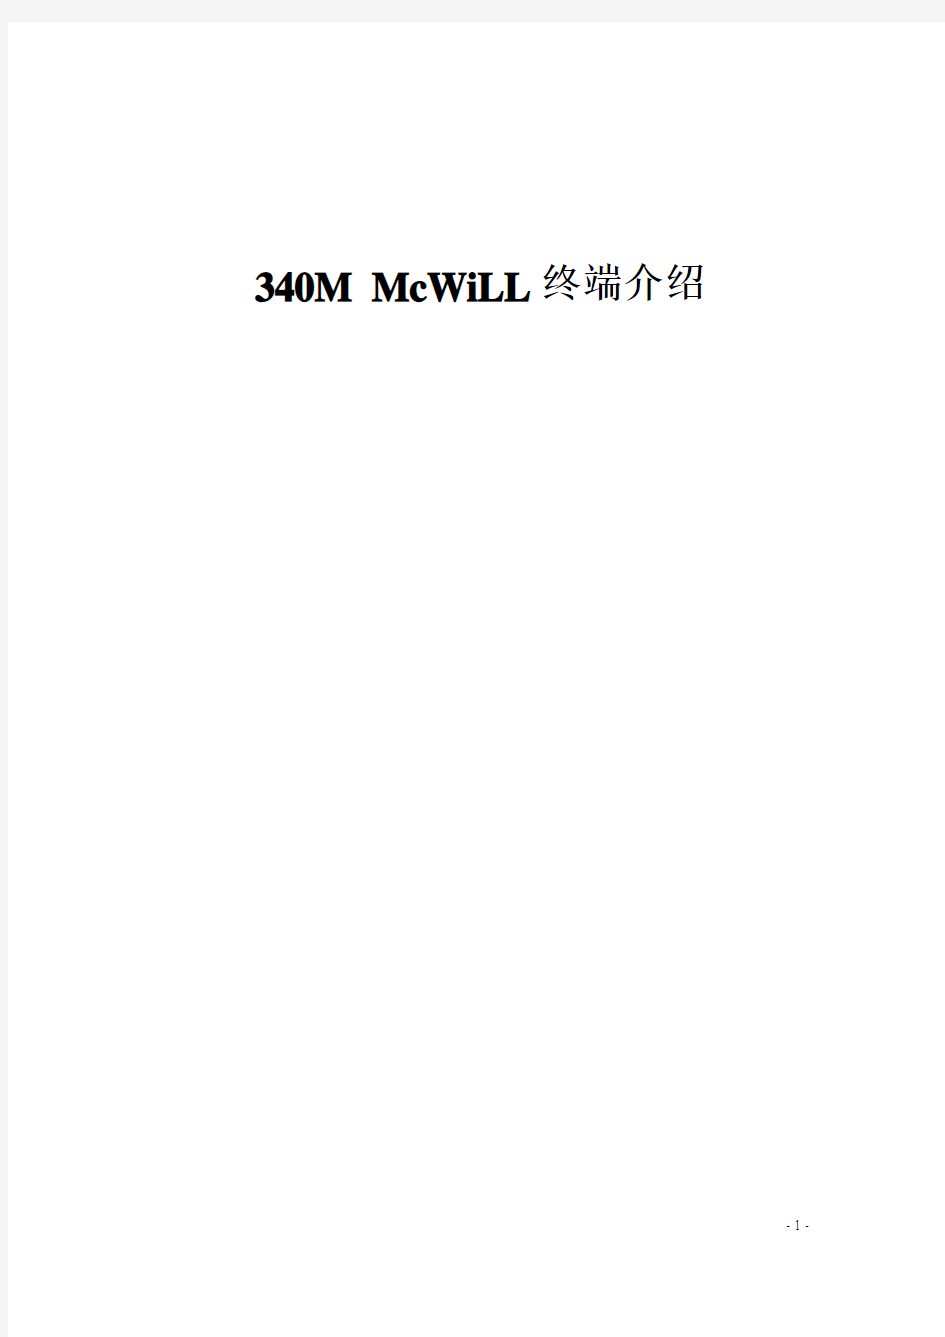 340M McWiLL 终端介绍